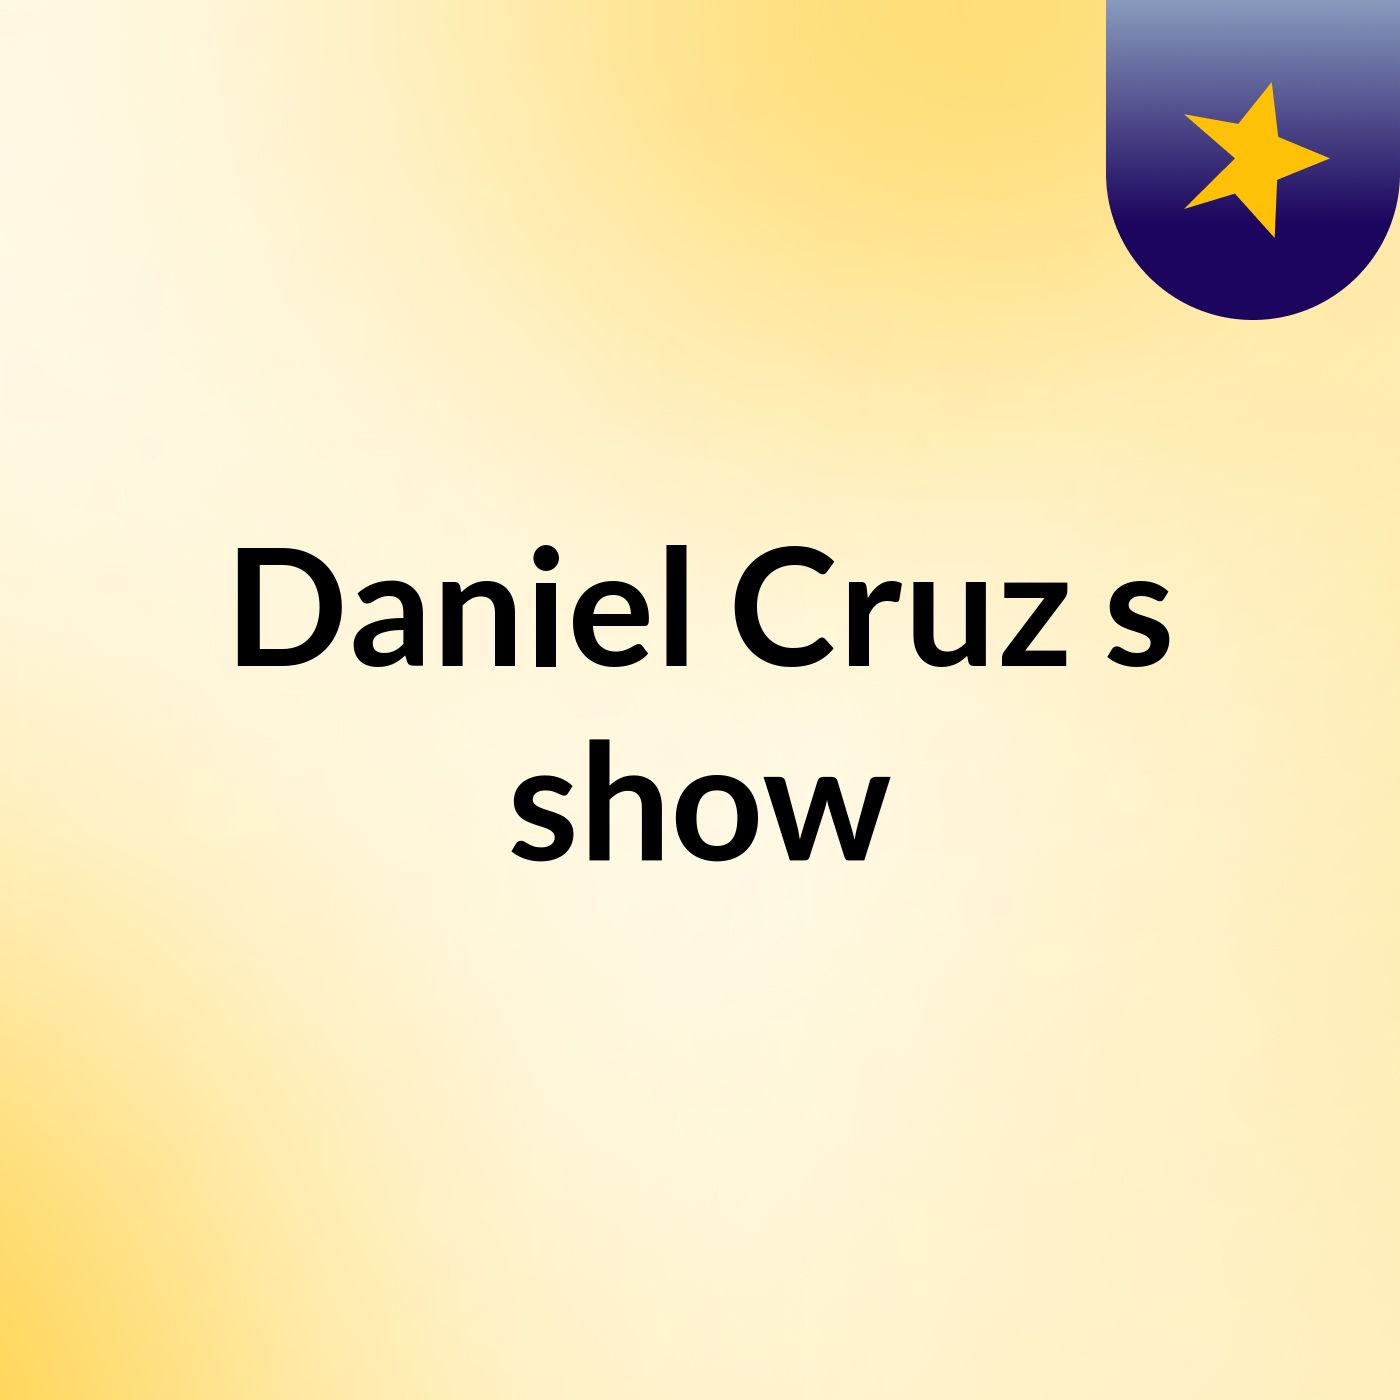 Daniel Cruz's show